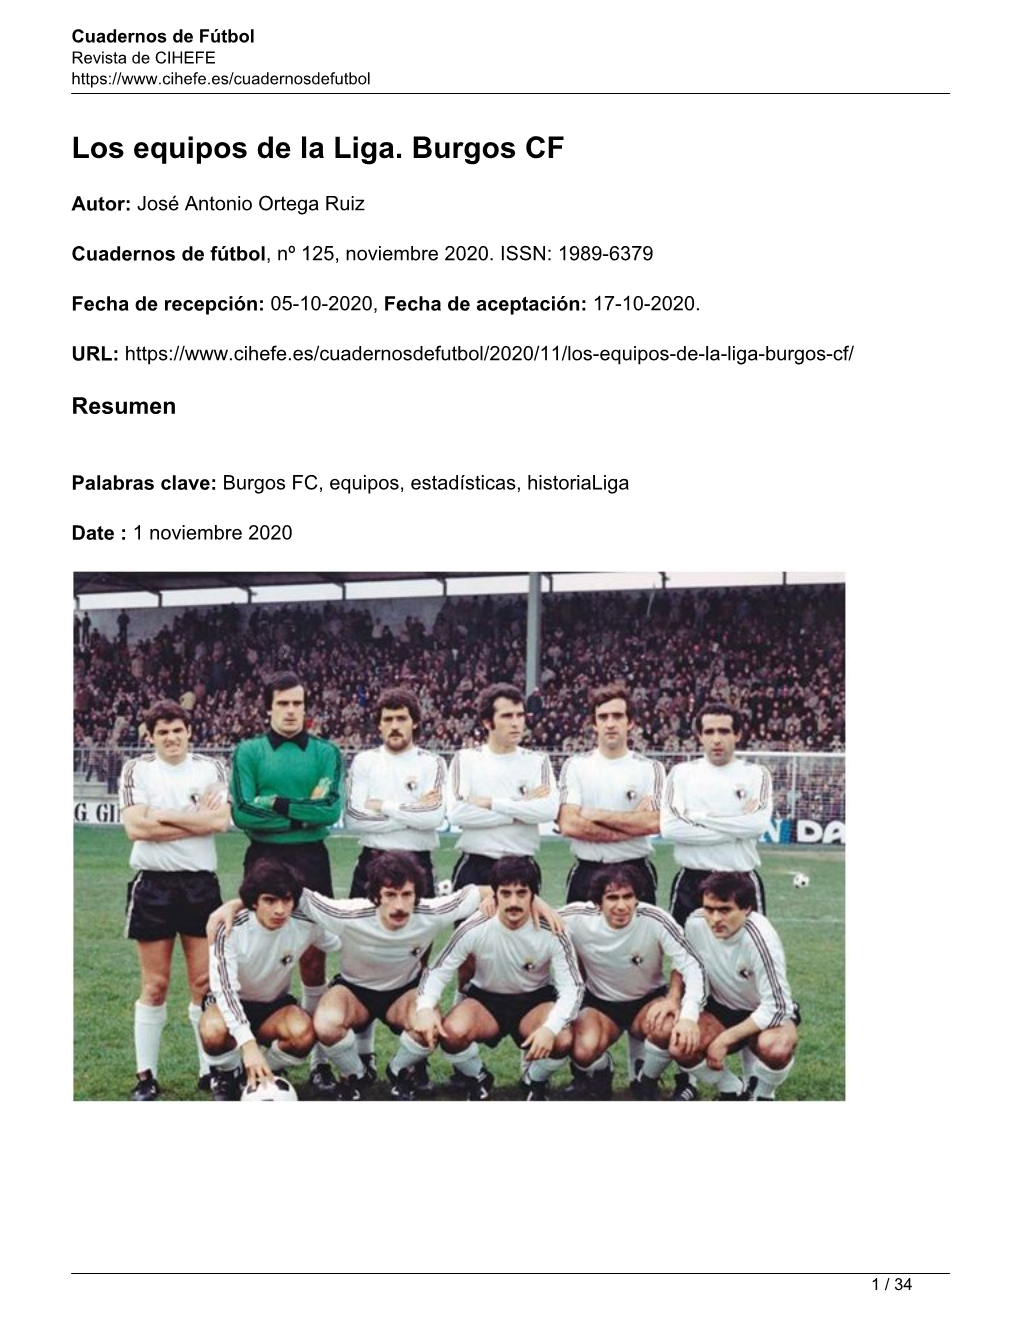 Los Equipos De La Liga. Burgos CF